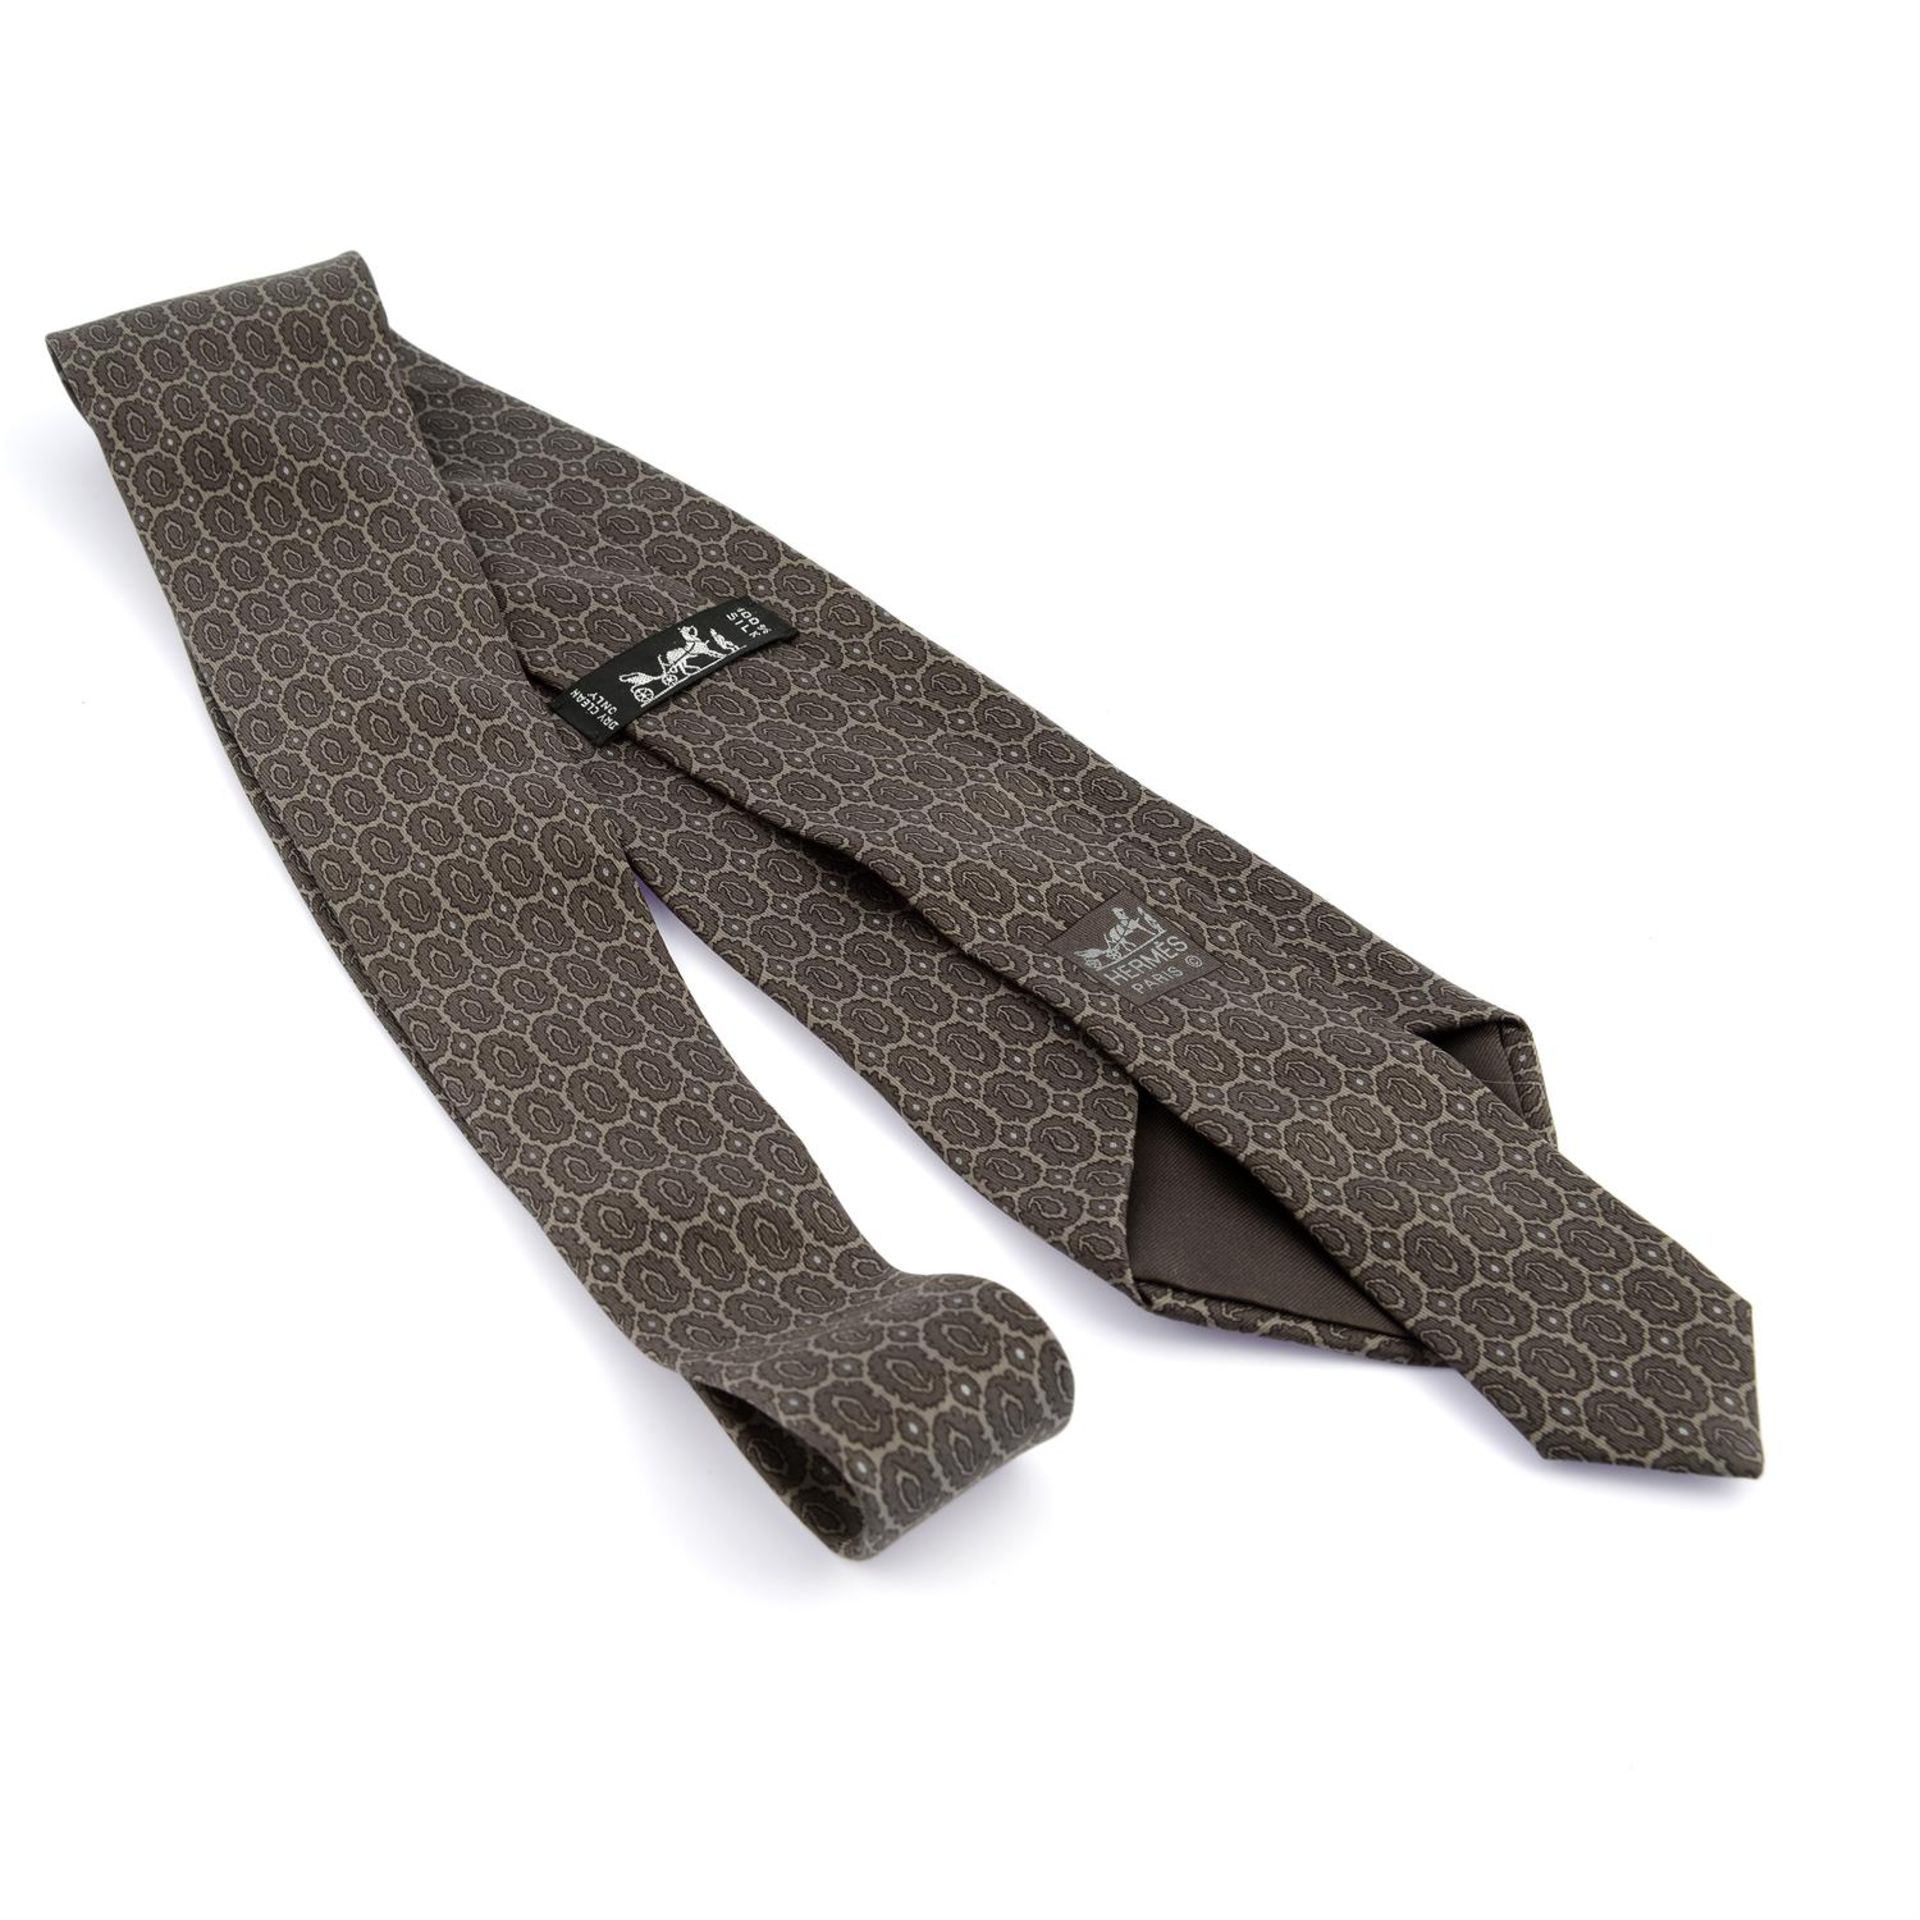 HERMÈS - a light brown printed silk tie. - Image 2 of 2